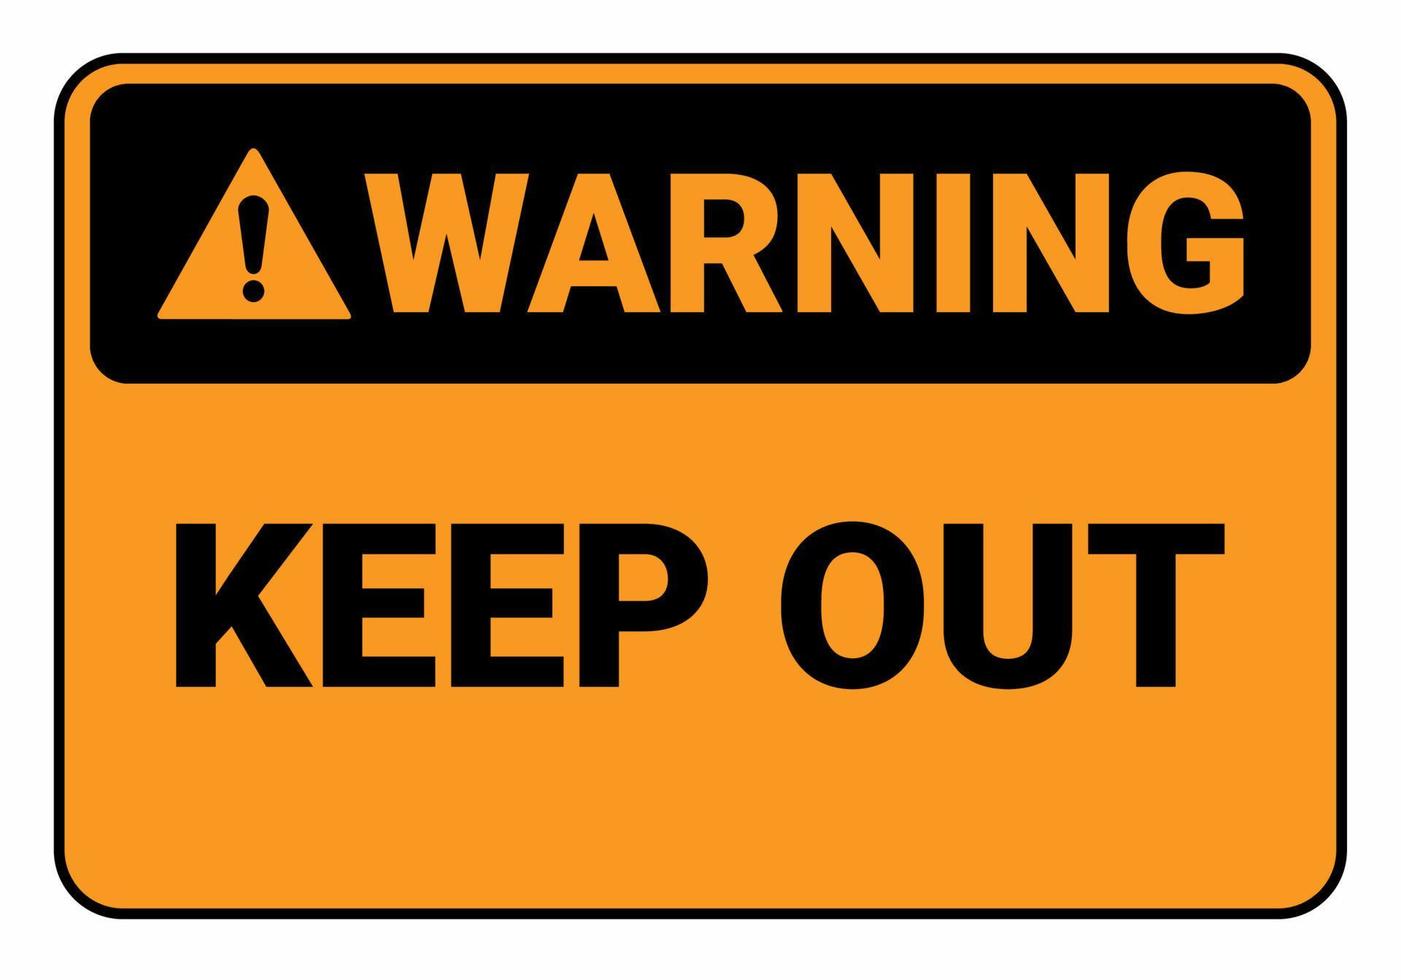 advertencia mantener fuera. ilustración de vector de señal de seguridad. Signo estándar de osha y ansi. eps10